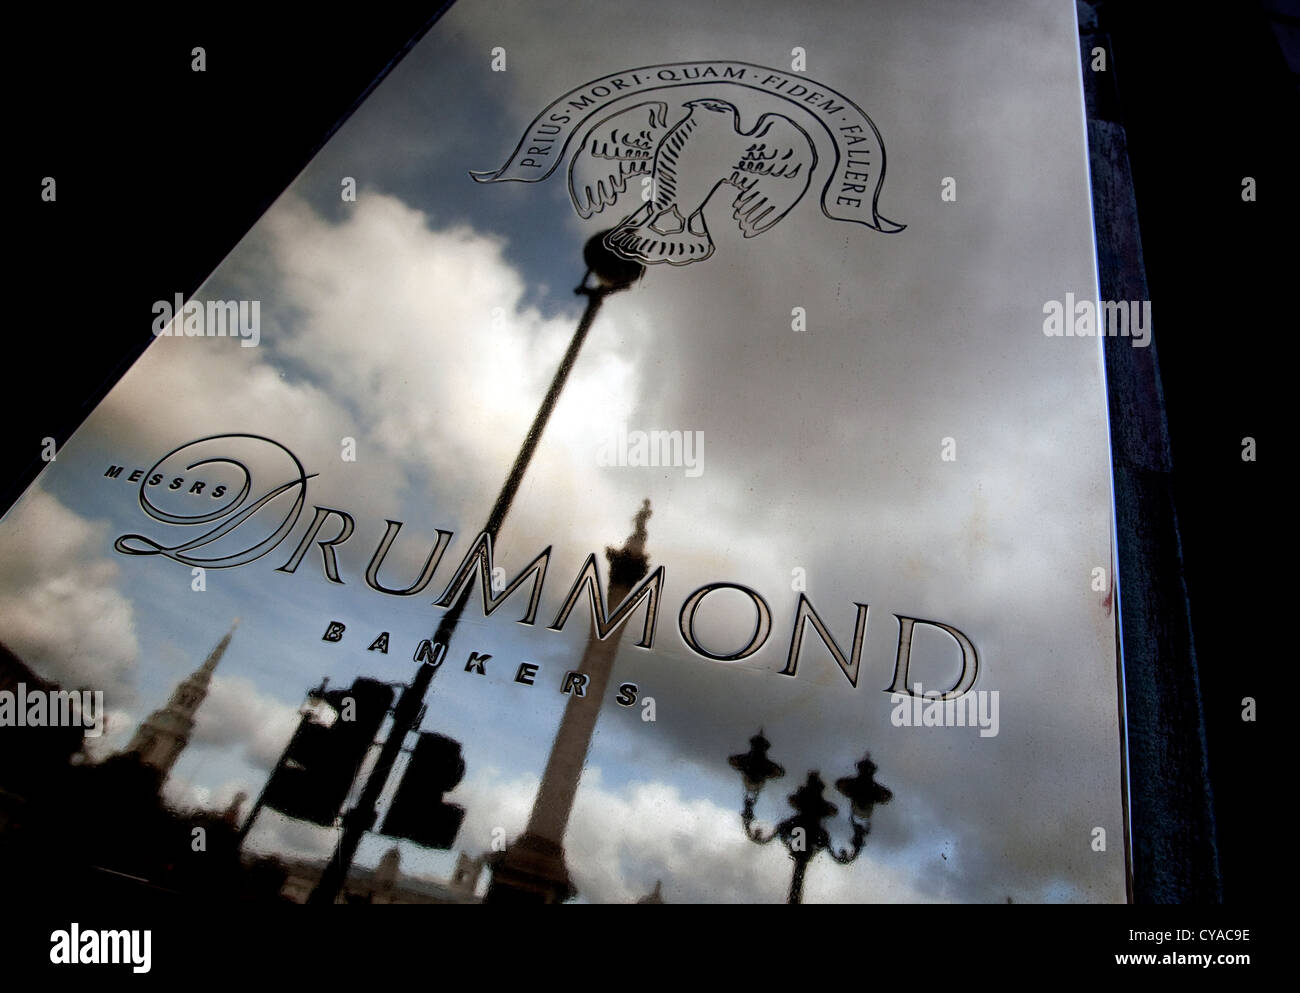 Die Herren Drummond Privatbank am Trafalgar Square in London Stockfoto